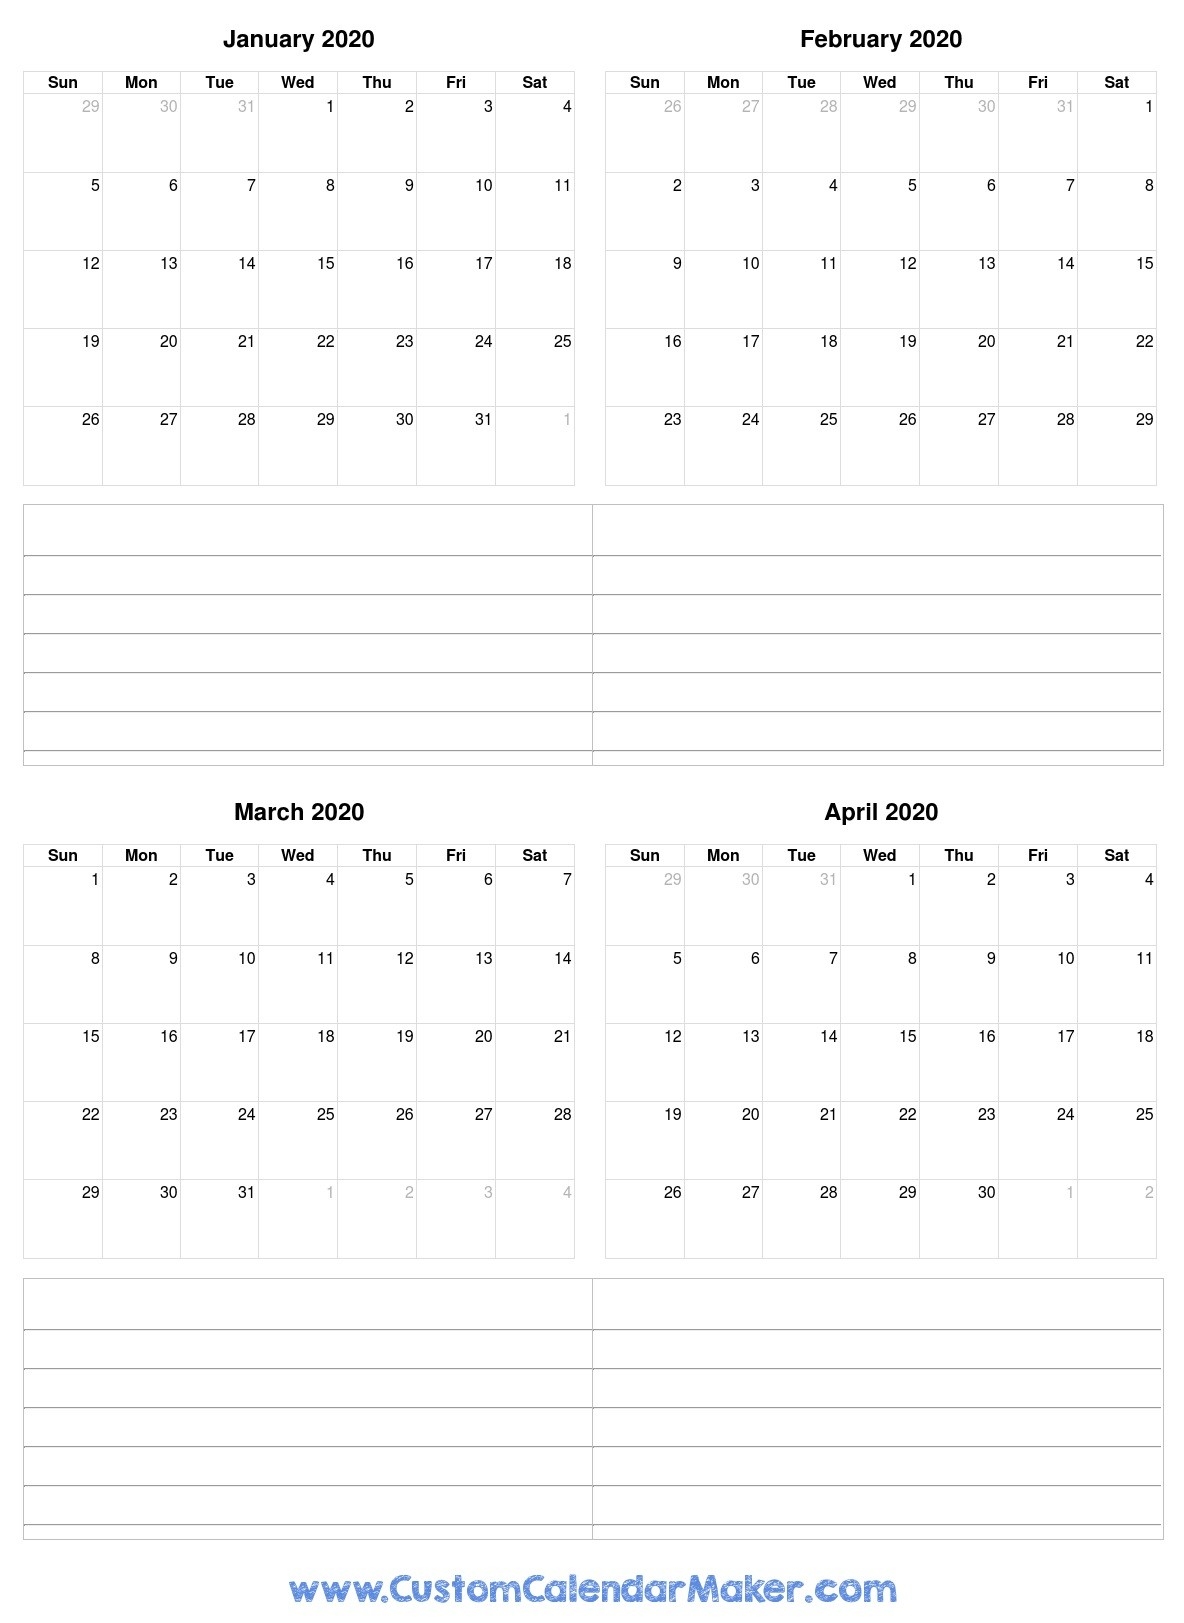 January To April 2020 Calendar-January To April 2020 Calendar